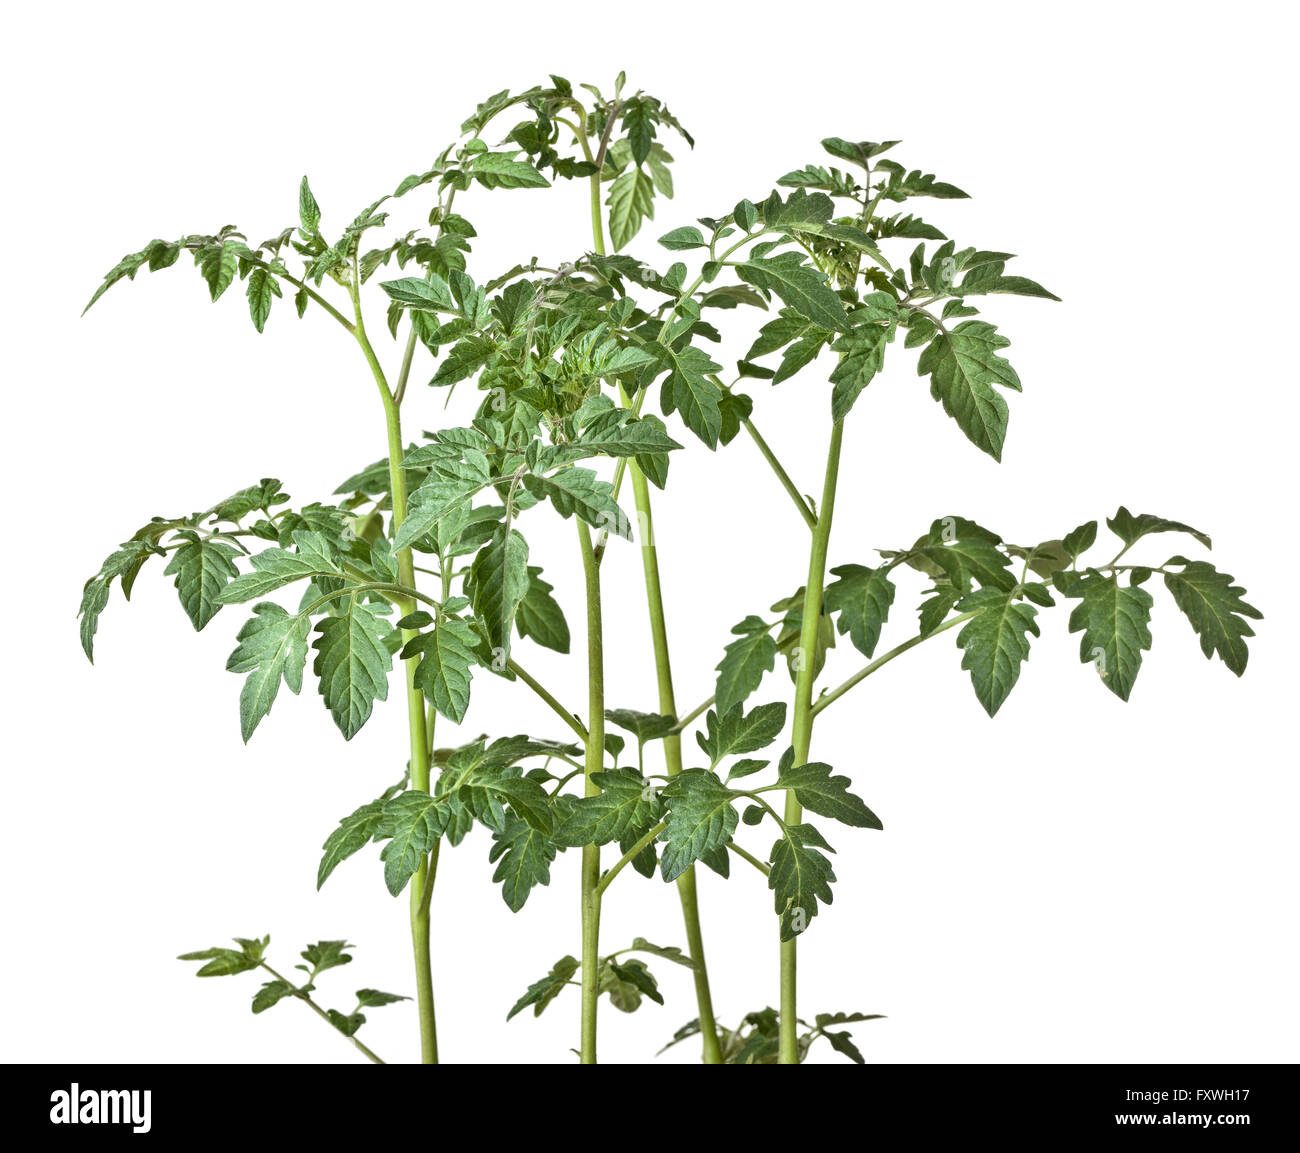 tomato plant on white background Stock Photo